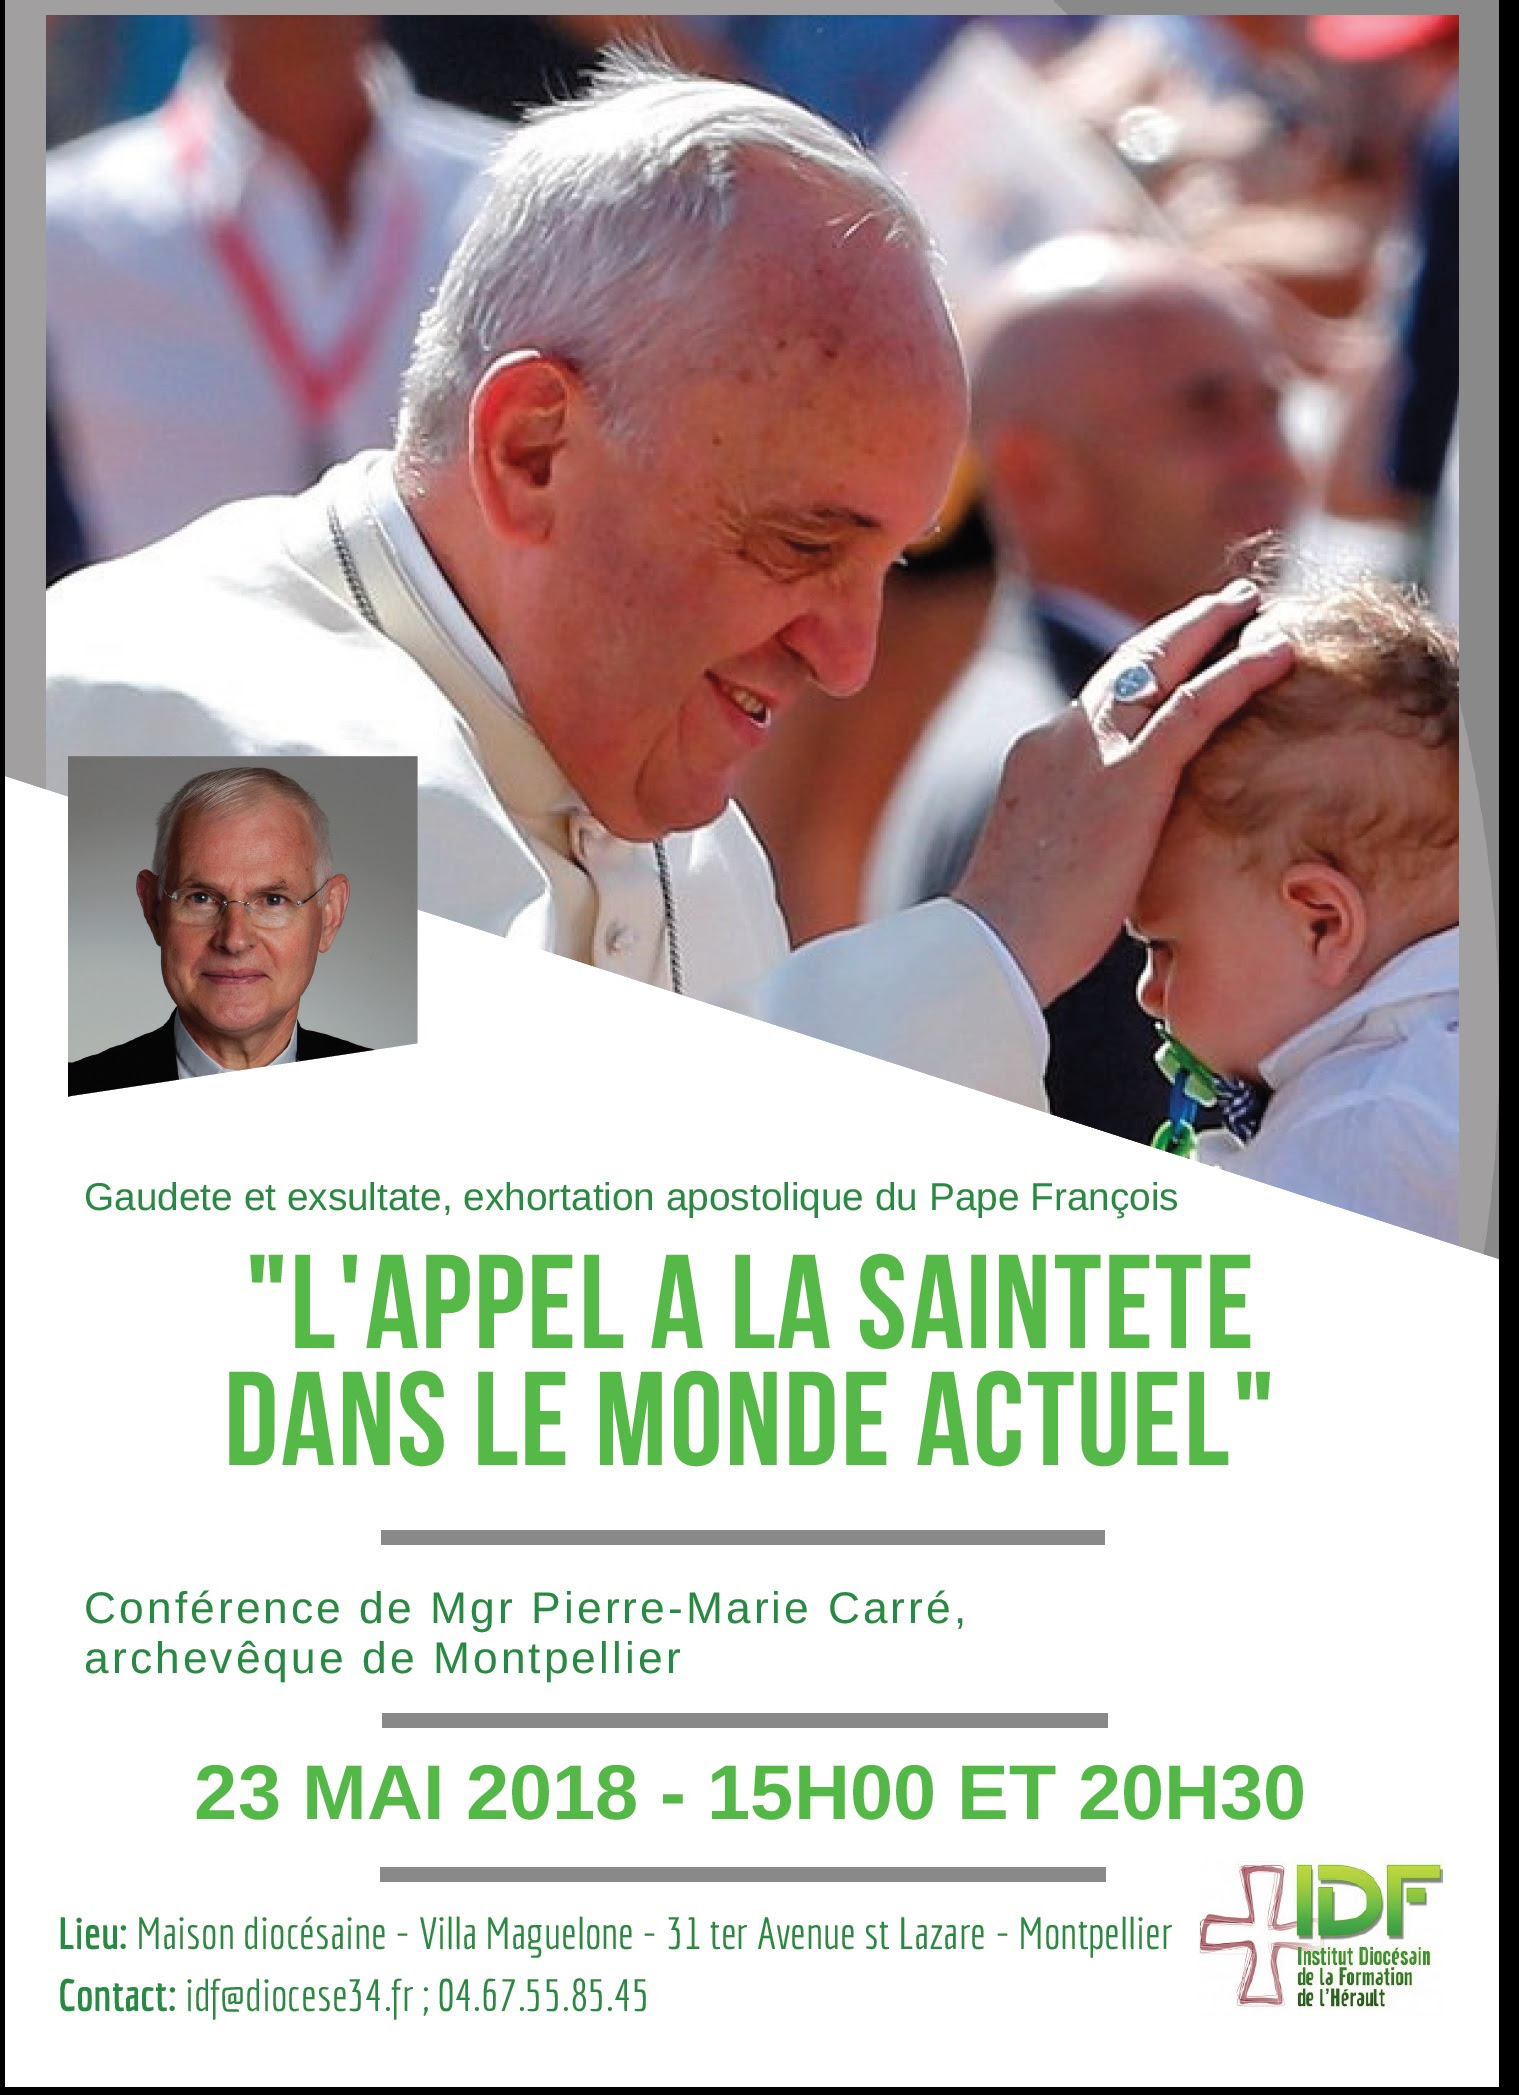 Conférence “Appel à la sainteté dans le monde actuel” le 23 mai 2018 à Montpellier (34)